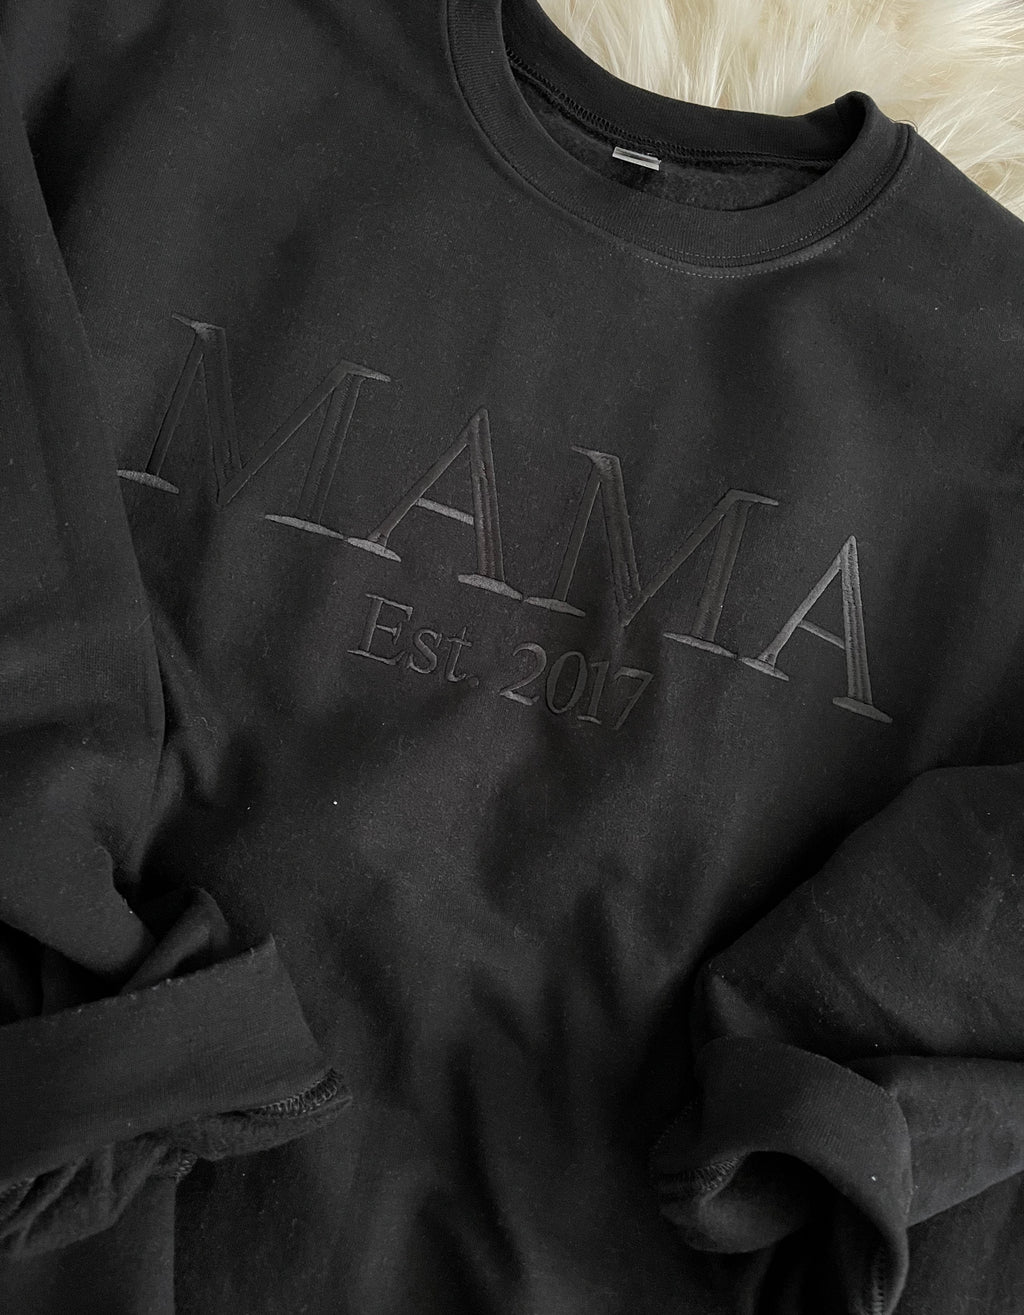 Mama Embroidered Tone on Tone Neutral Sweatshirt, Black on Black